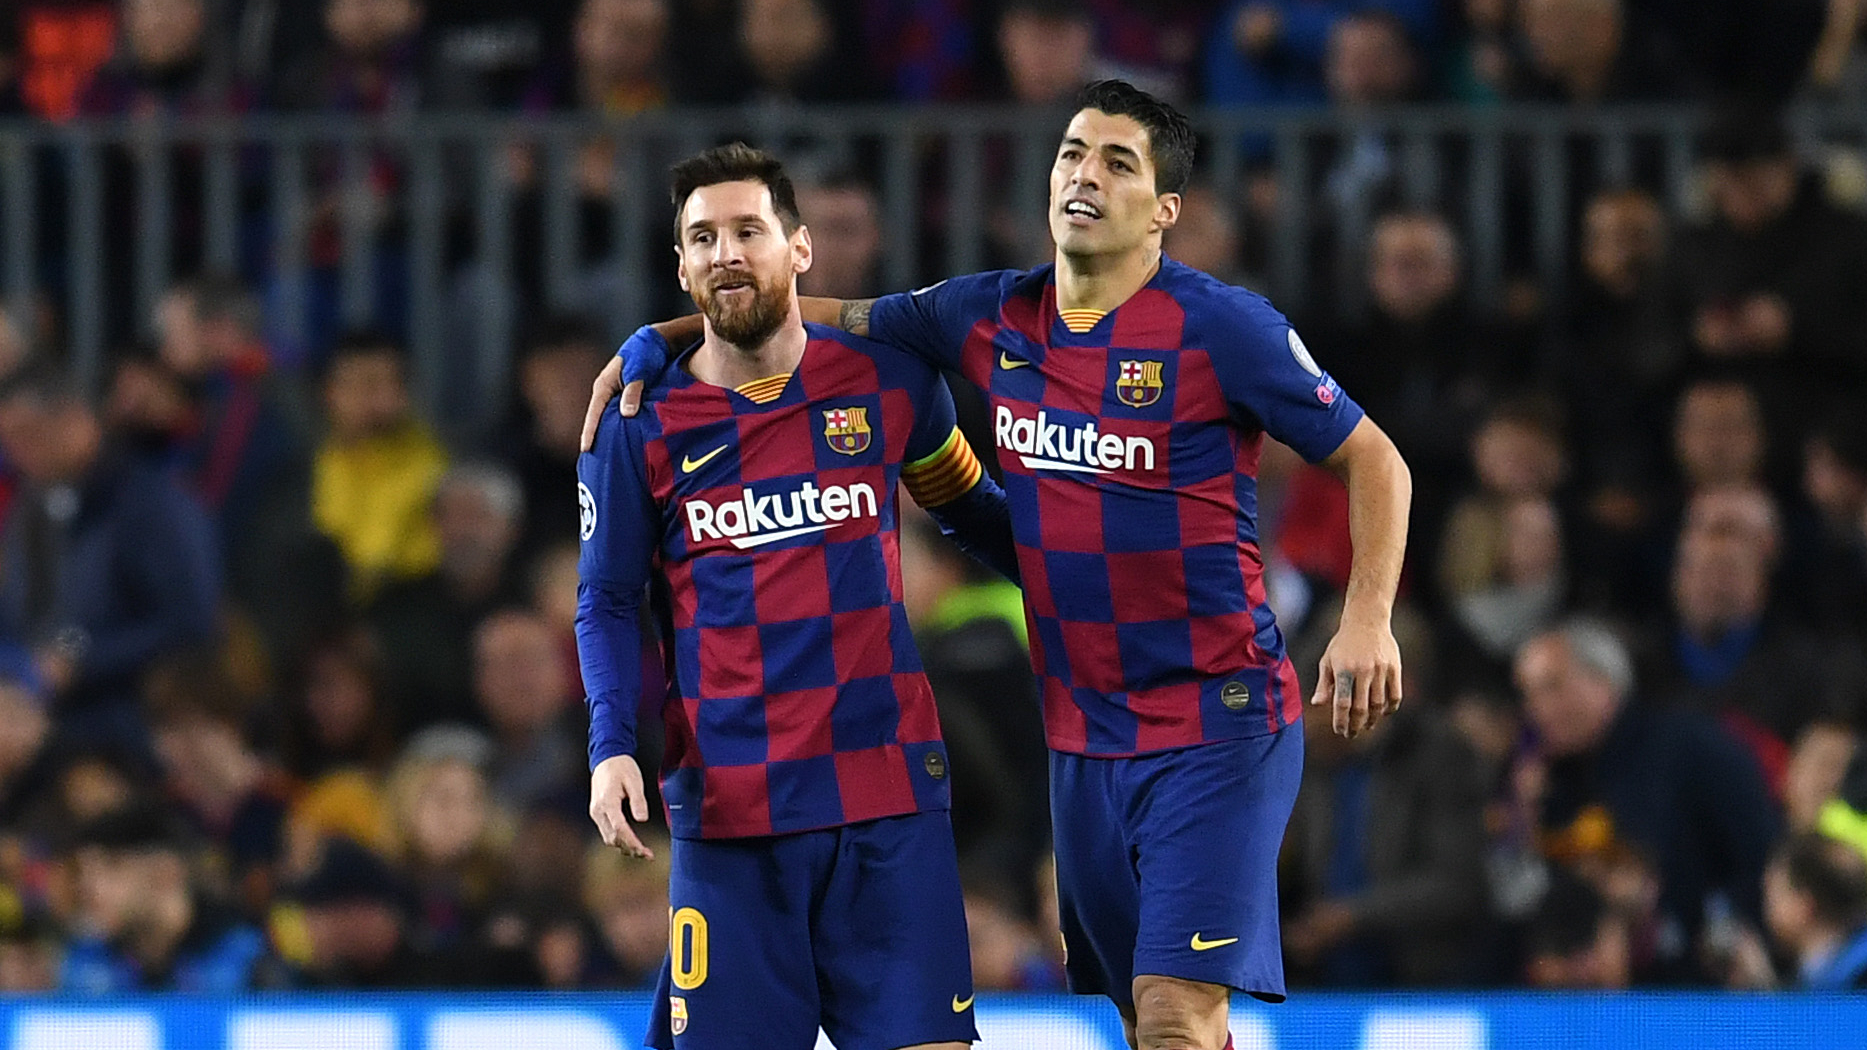 Le staff du FC Barcelone confirme la bonne nouvelle pour Luis Suarez